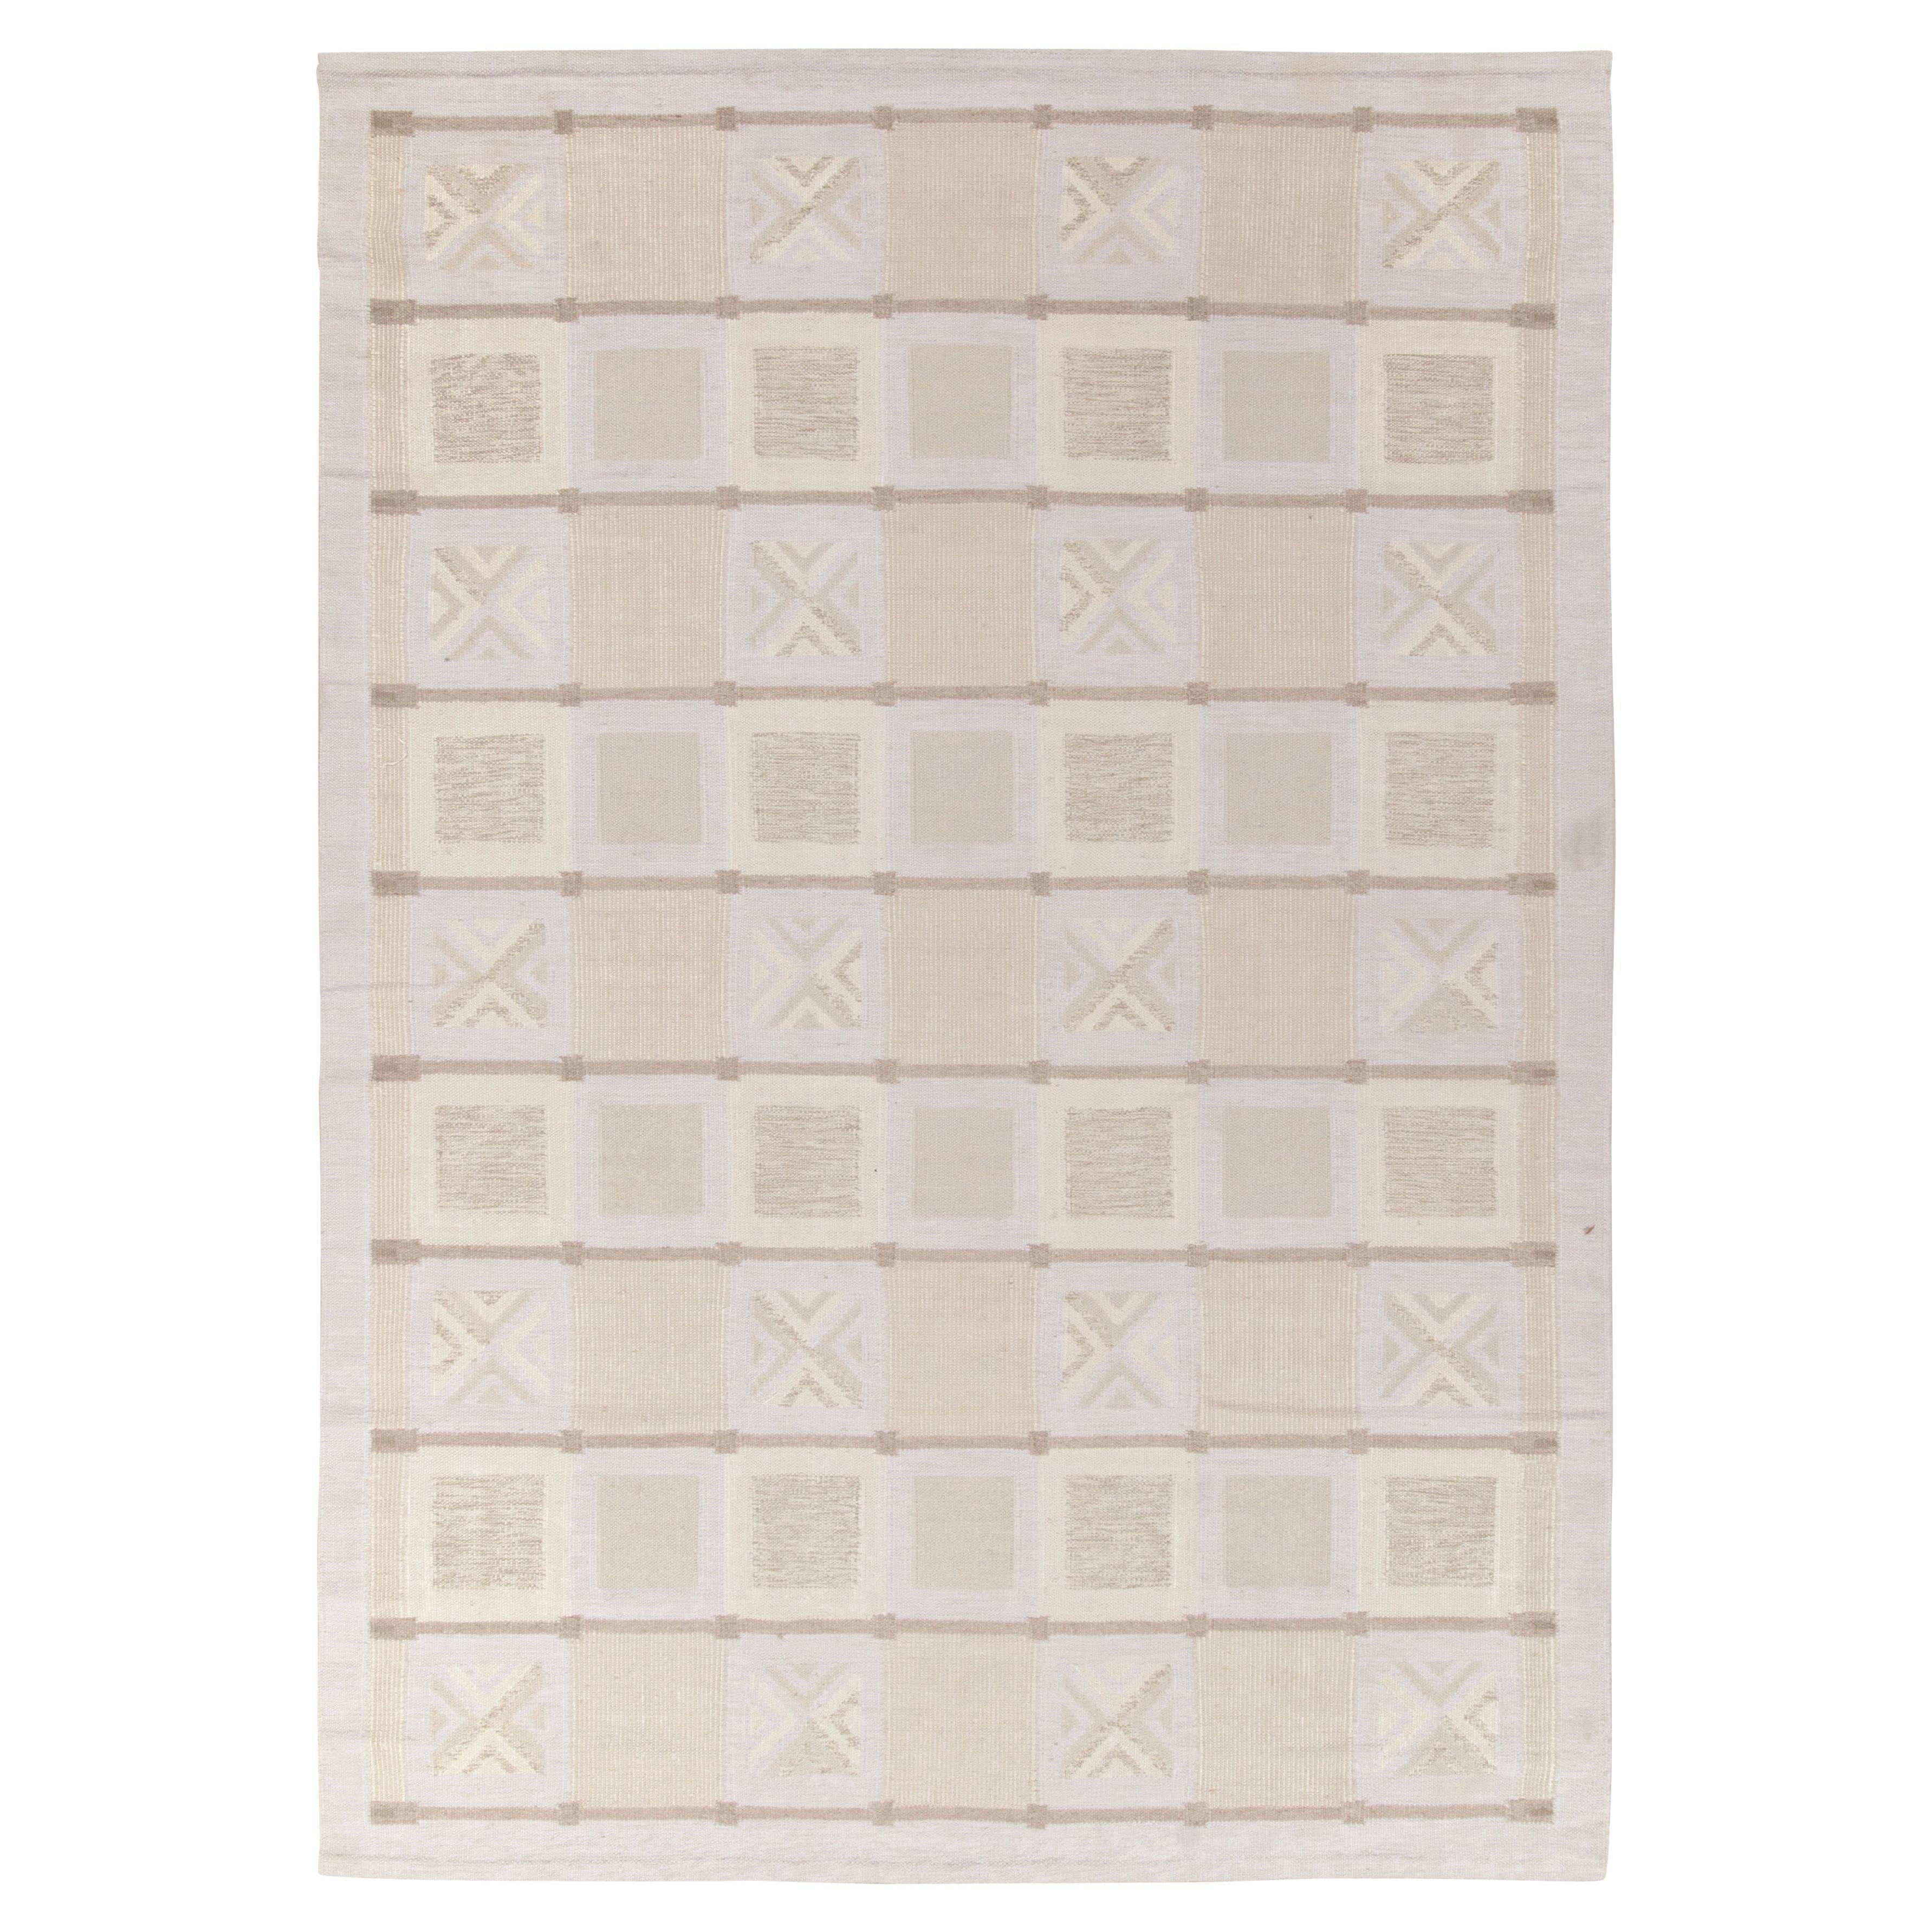 Teppich & Kelim im skandinavischen Stil in Weiß, Beige-Braun mit geometrischem Muster